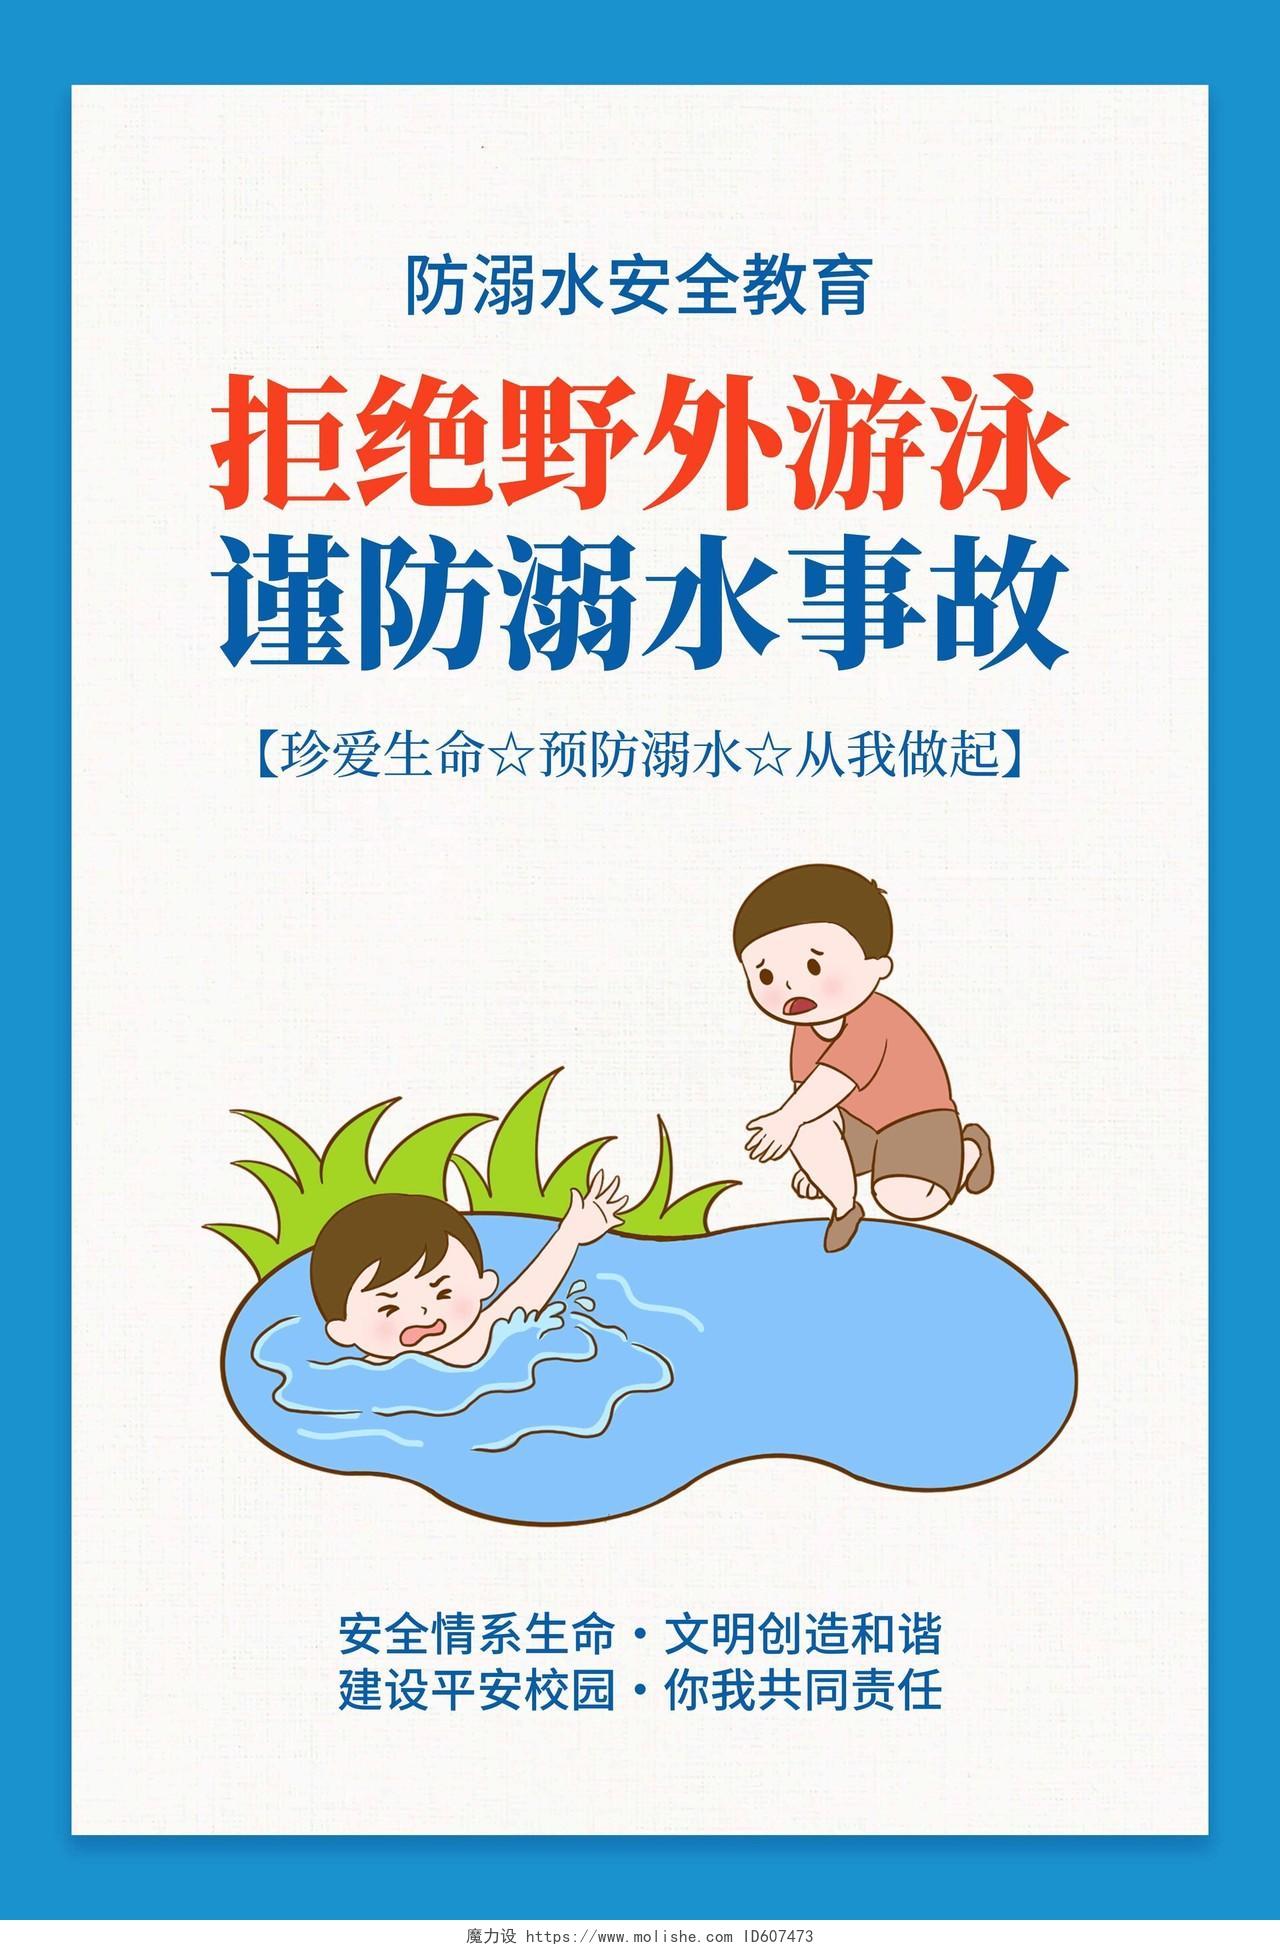 蓝色卡通简约夏天游泳防溺水宣传海报套图